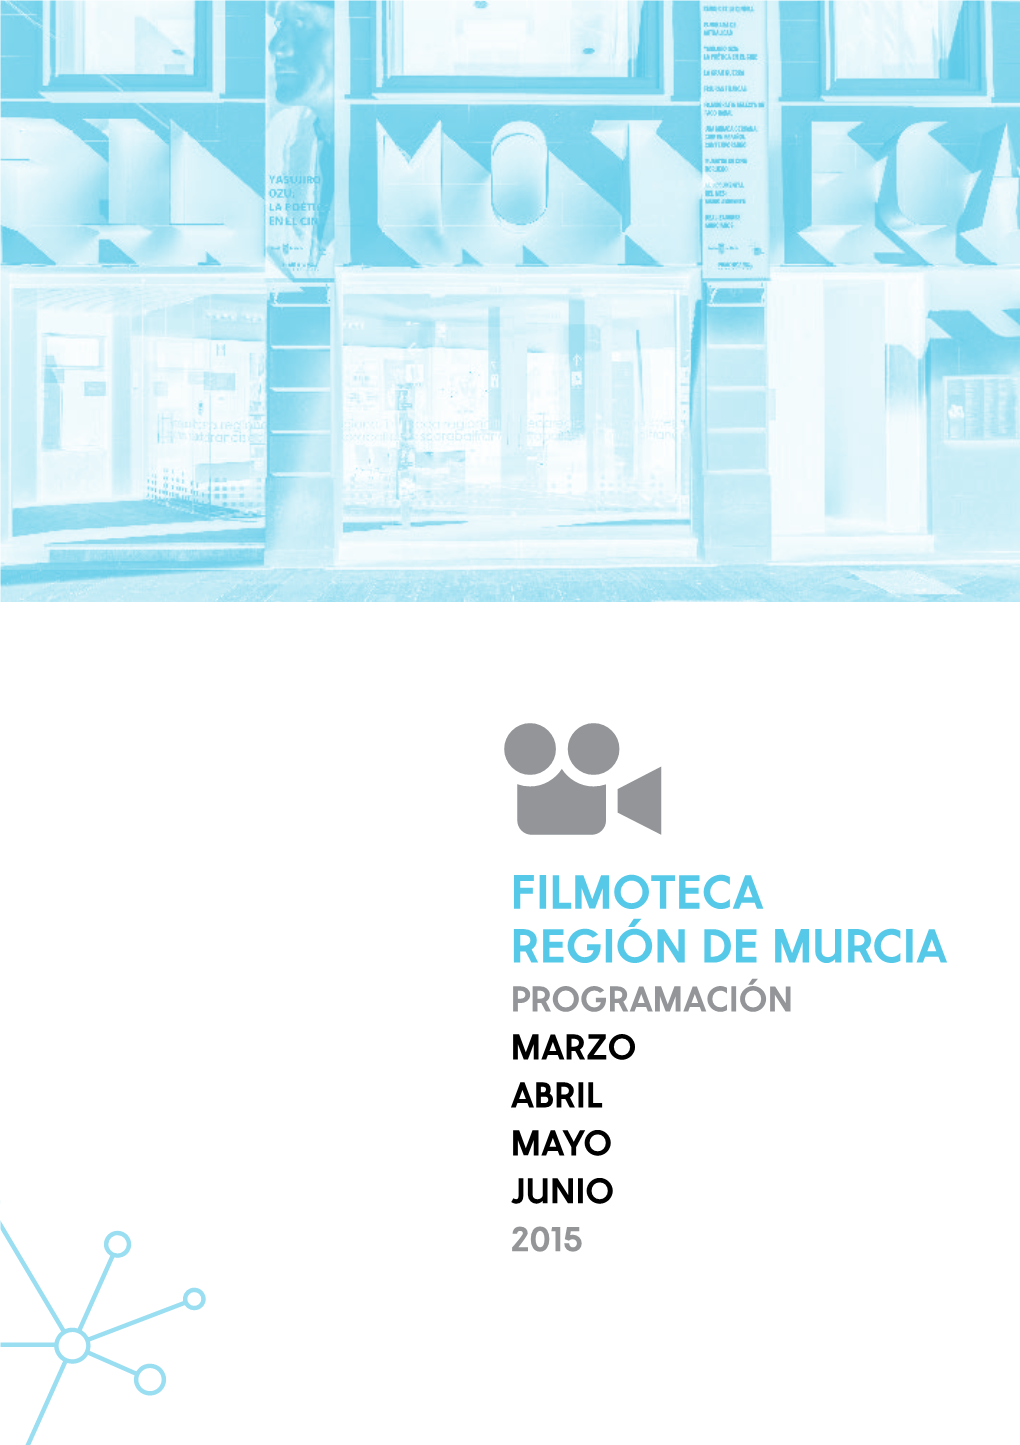 FILMOTECA REGIÓN DE MURCIA PROGRAMACIÓN MARZO ABRIL MAYO JUNIO 2015 C Olaboran